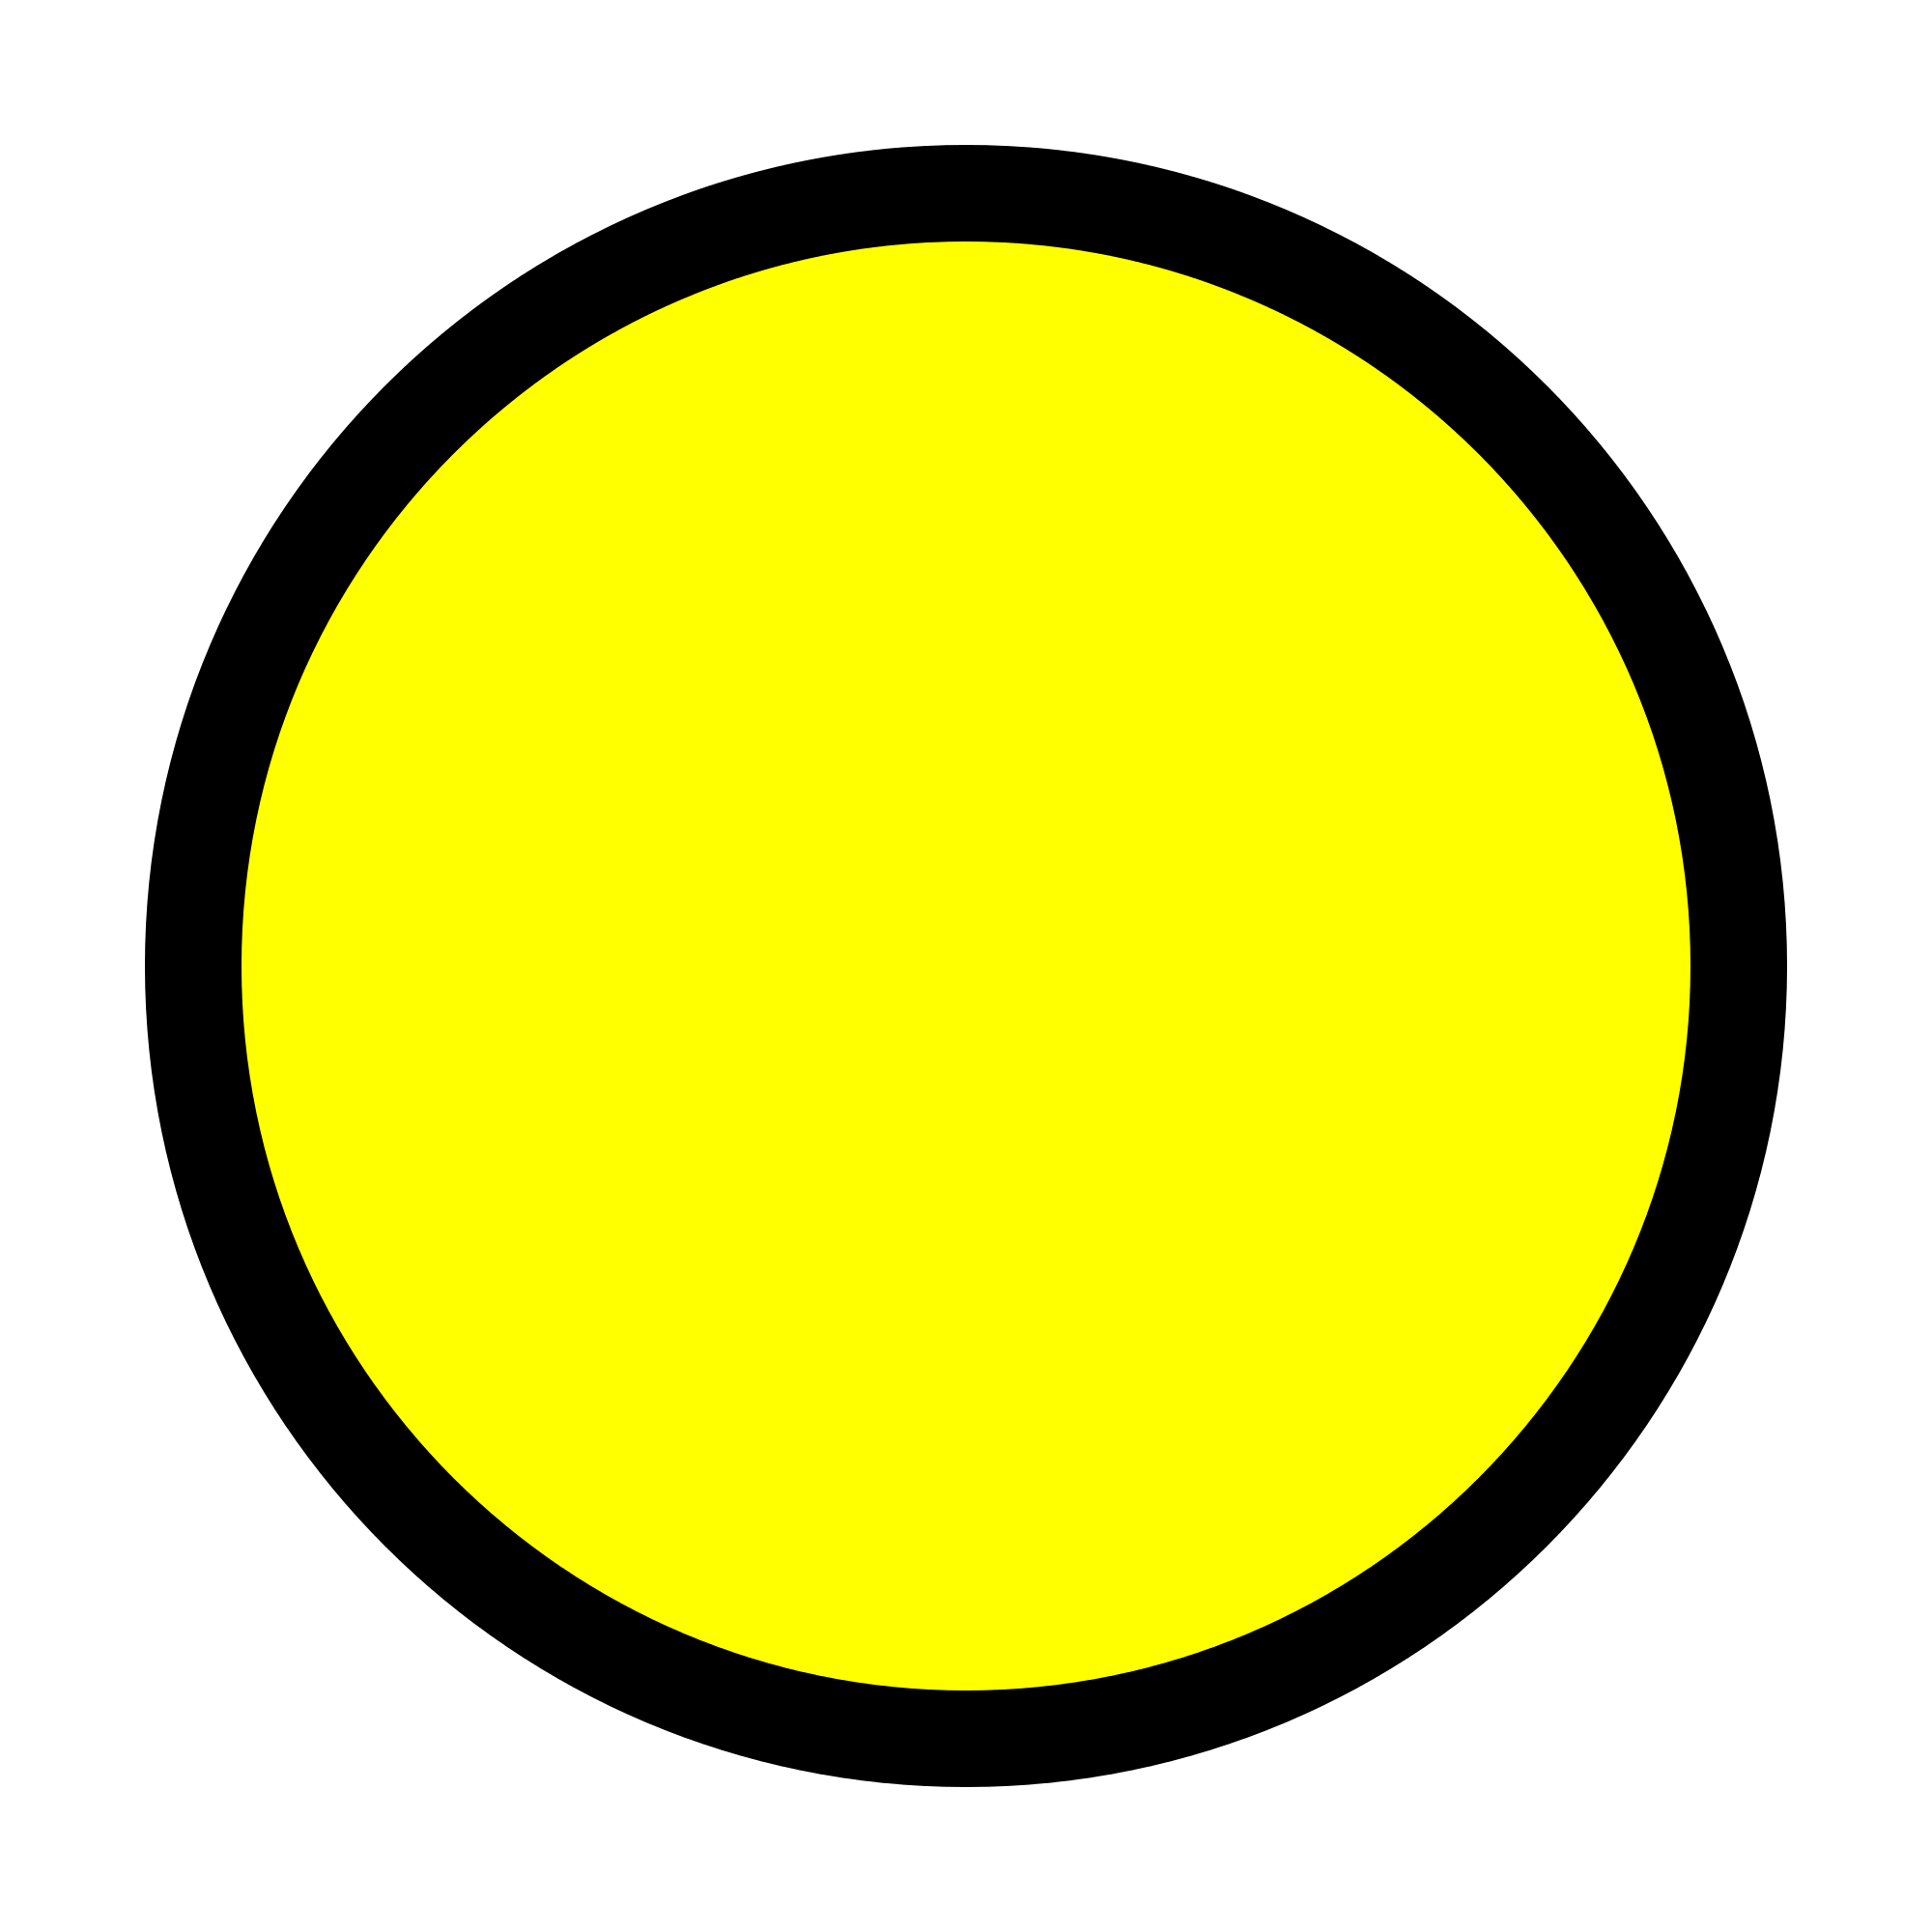 Black and Yellow Circle Logo - Circle Yellow.svg